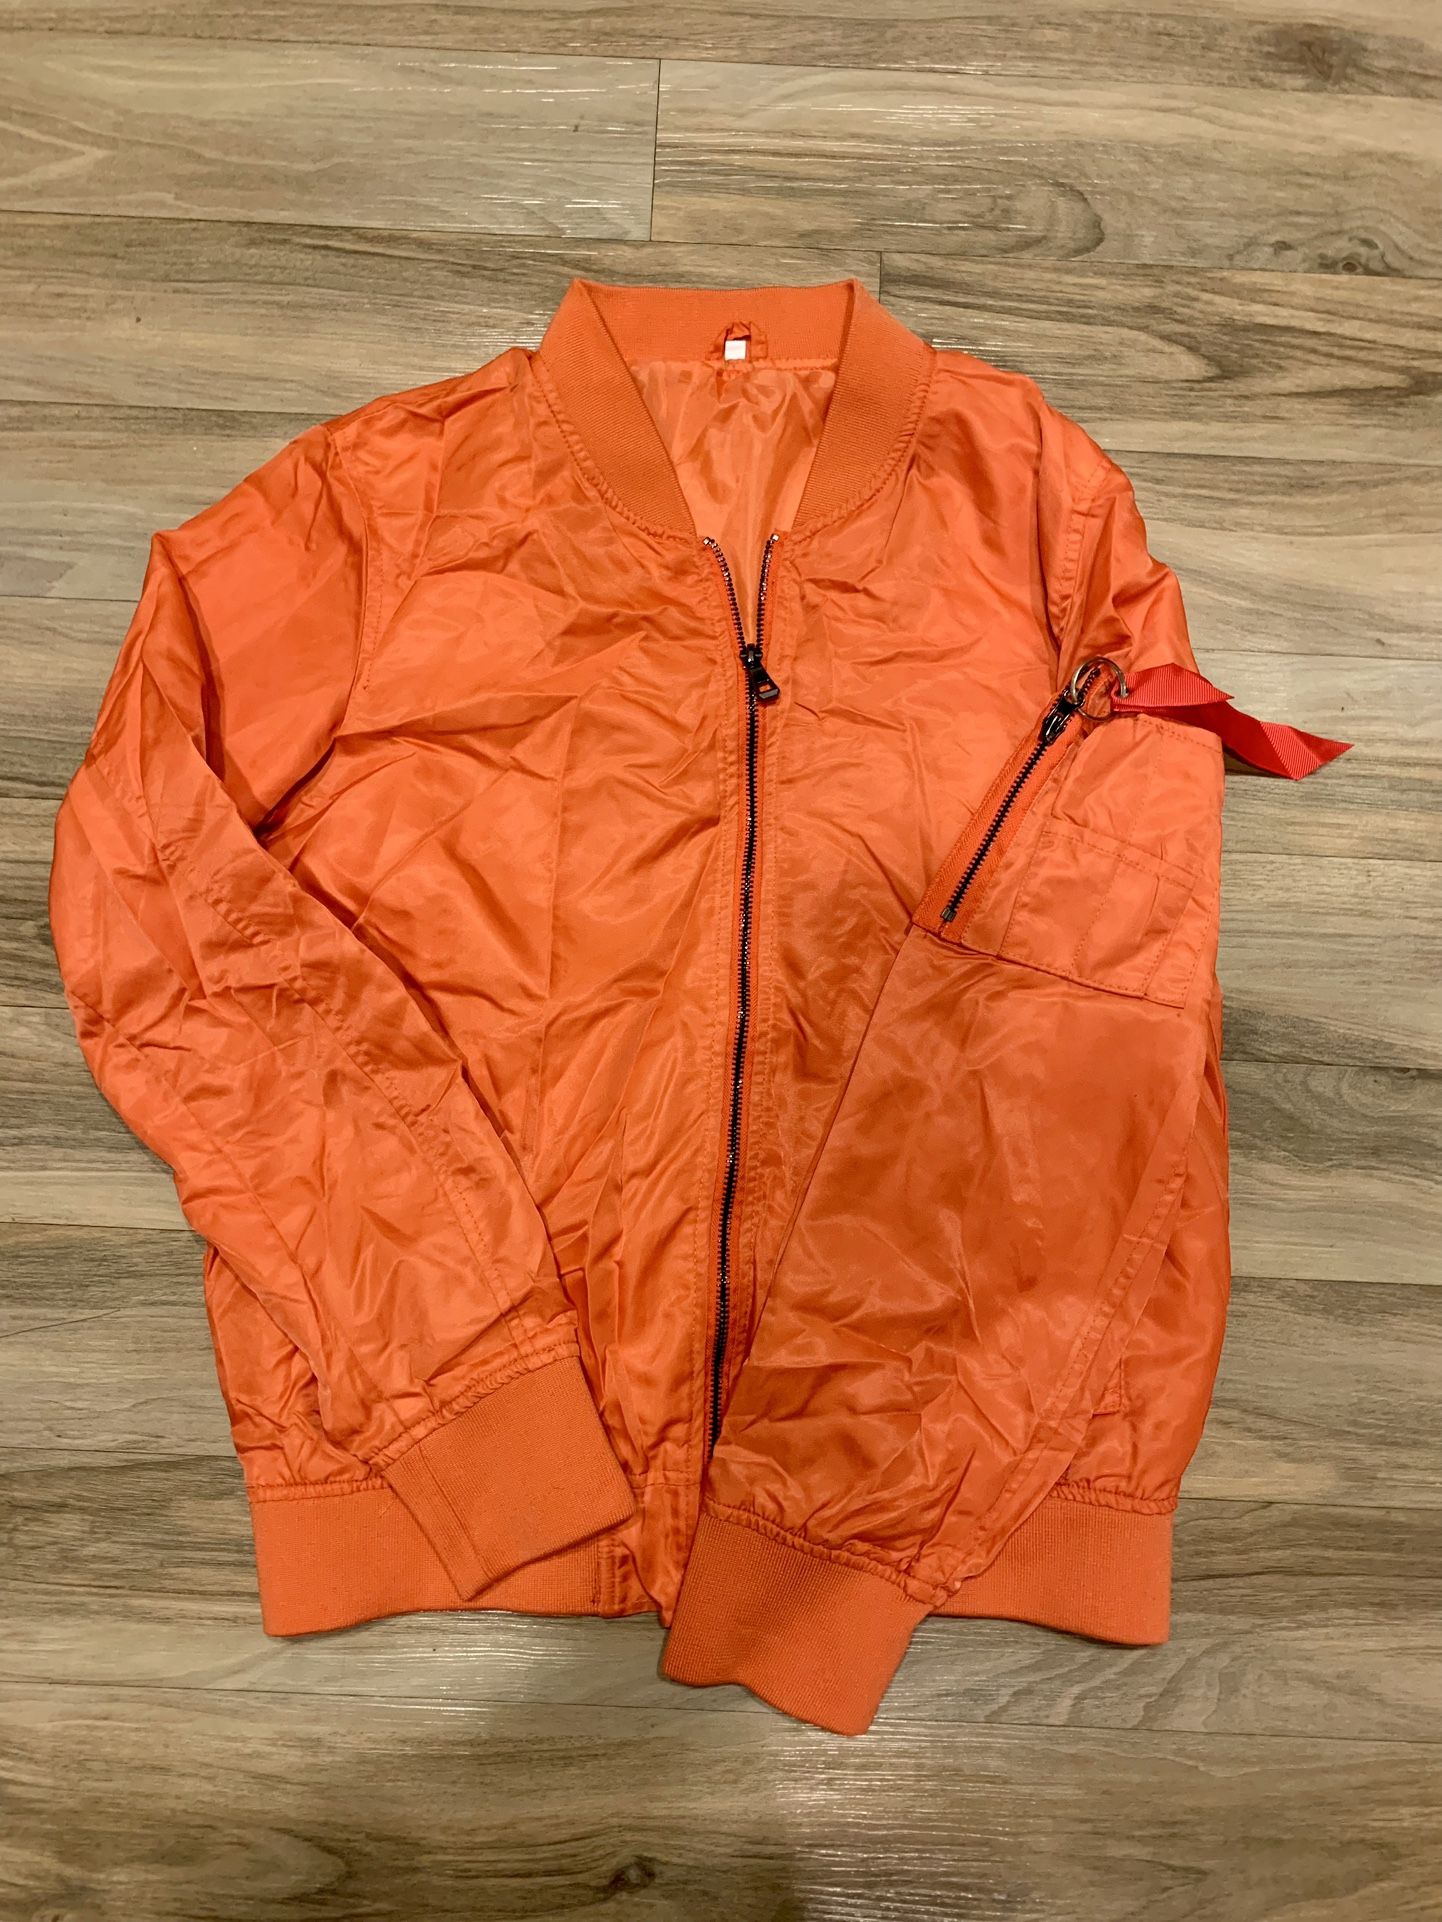 Men’s Neon Orange Fashion Zip Up Jacket With Zippers 